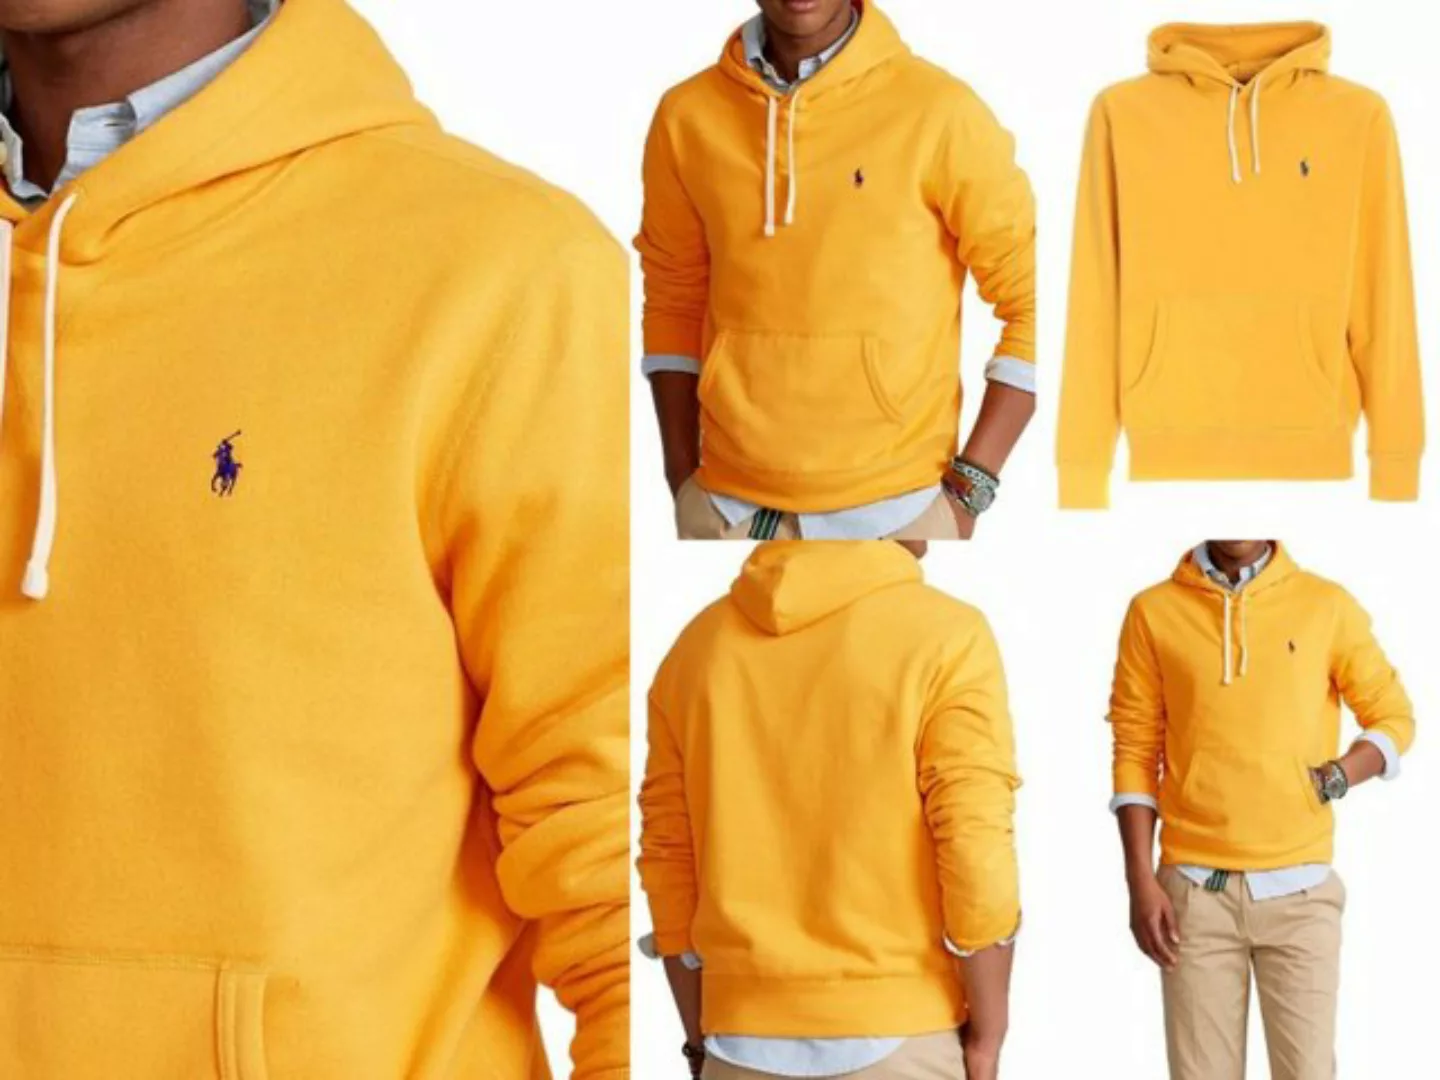 Ralph Lauren Sweatshirt POLO RALPH LAUREN Fleece Hoodie Sweater Kapuzen Swe günstig online kaufen